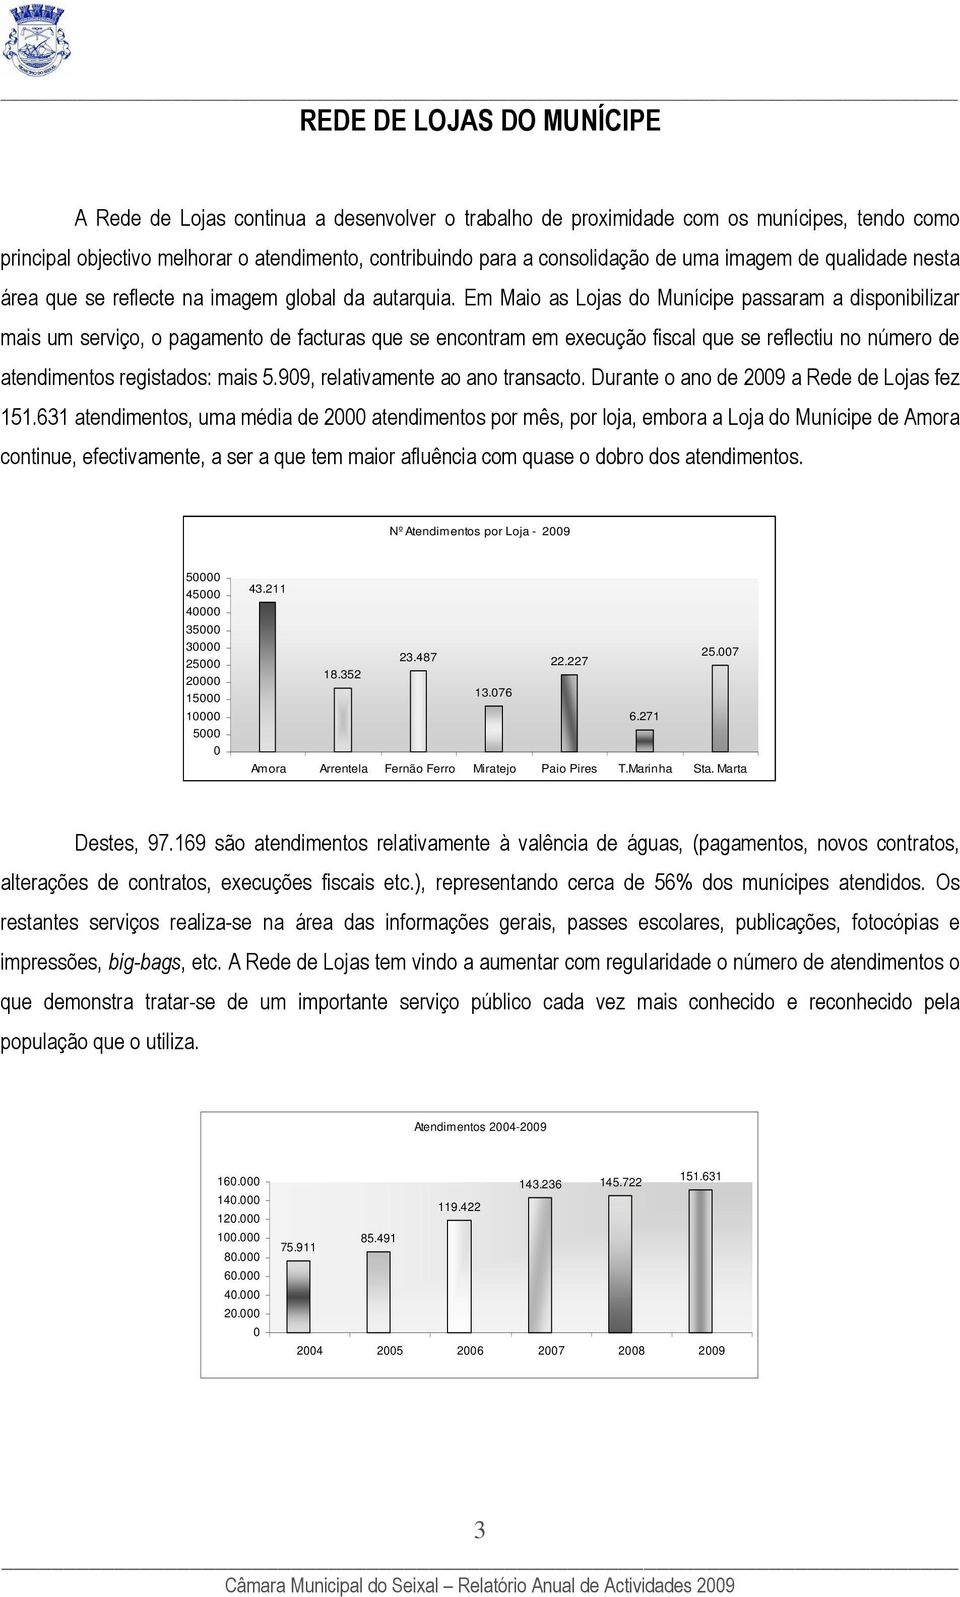 Em Maio as Lojas do Munícipe passaram a disponibilizar mais um serviço, o pagamento de facturas que se encontram em execução fiscal que se reflectiu no número de atendimentos registados: mais 5.